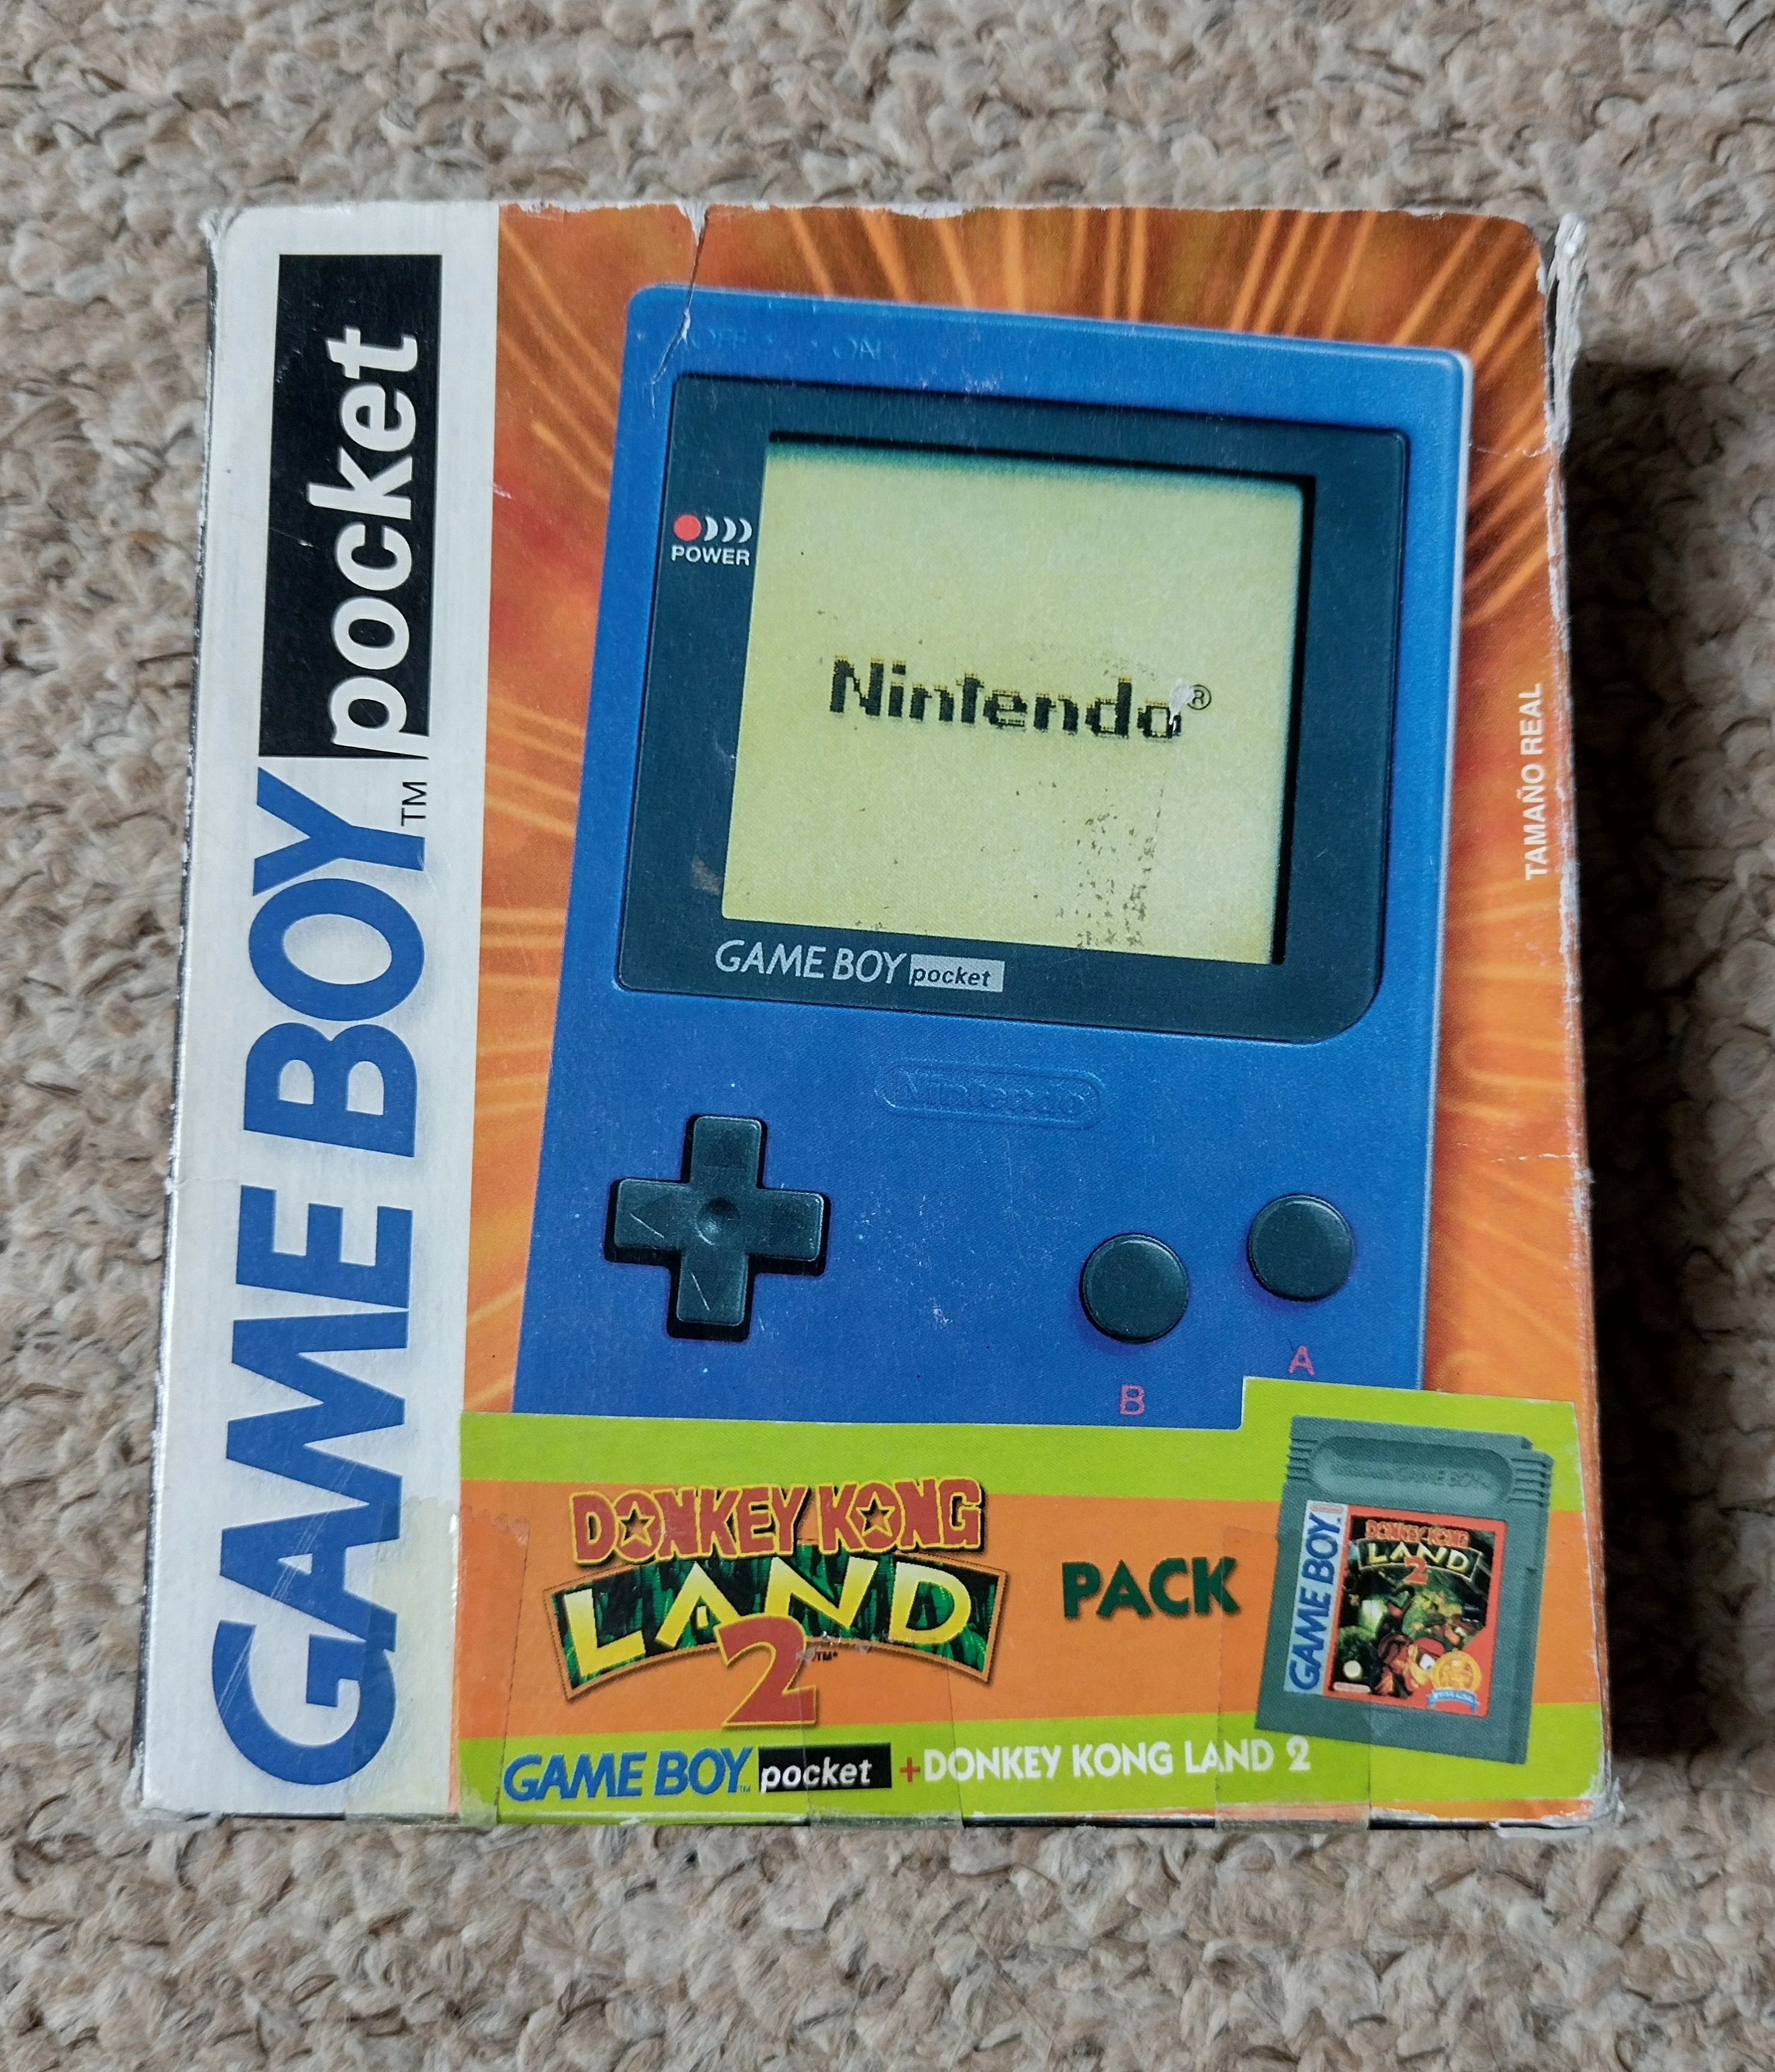  Nintendo Game Boy Pocket Donkey Kong Land 2 Pack